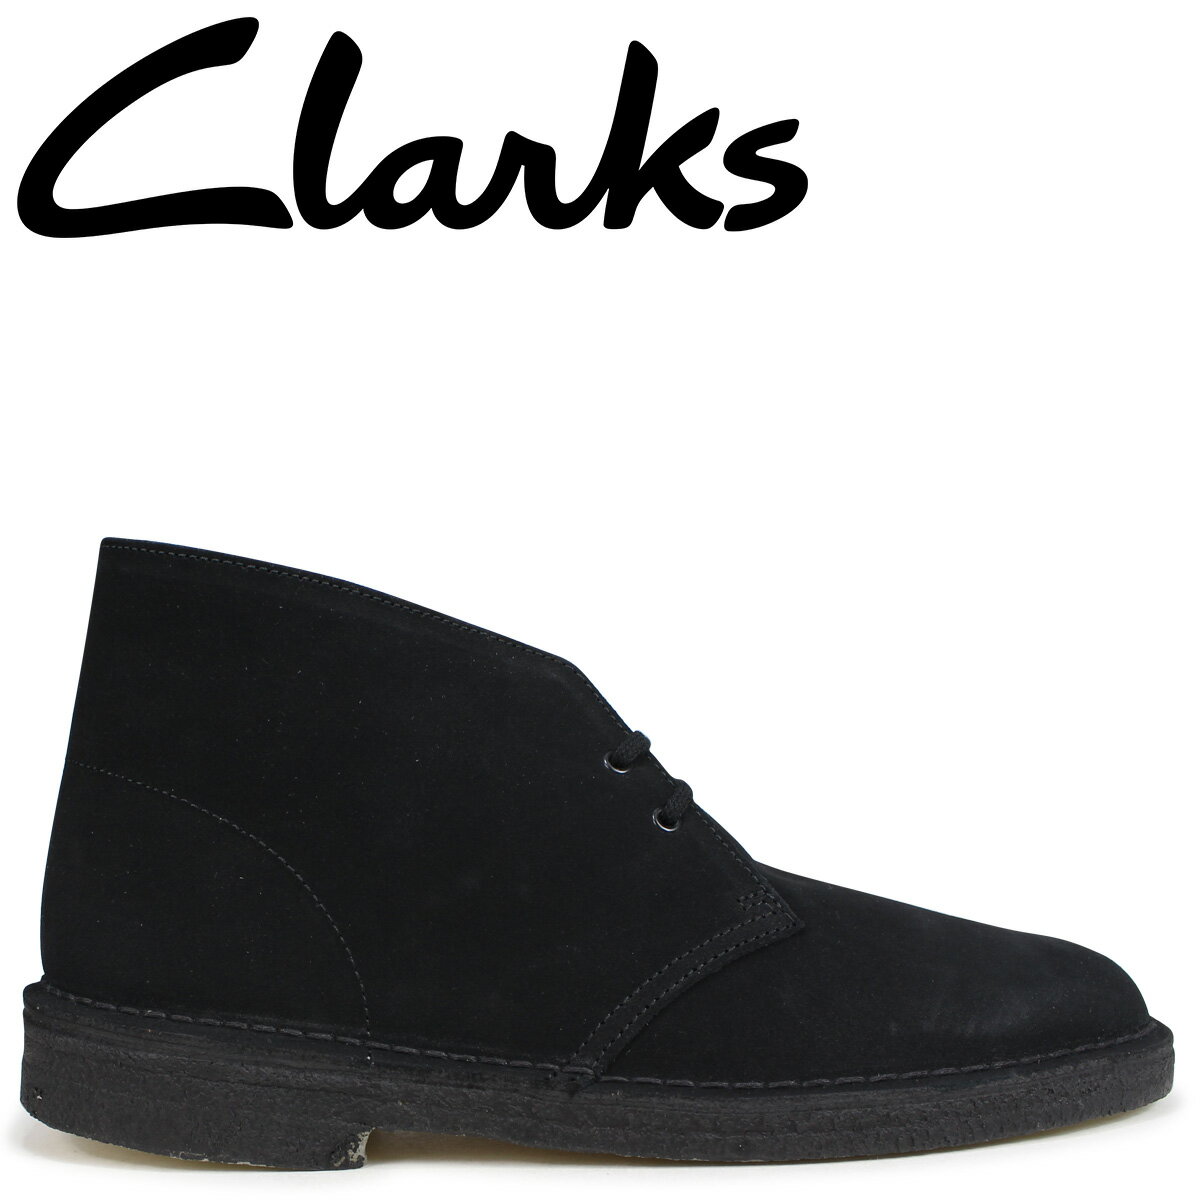 Clarks Originals デザートブーツ メンズ クラークス DESERT BOOT オリジナルズ Mワイズ 26107882